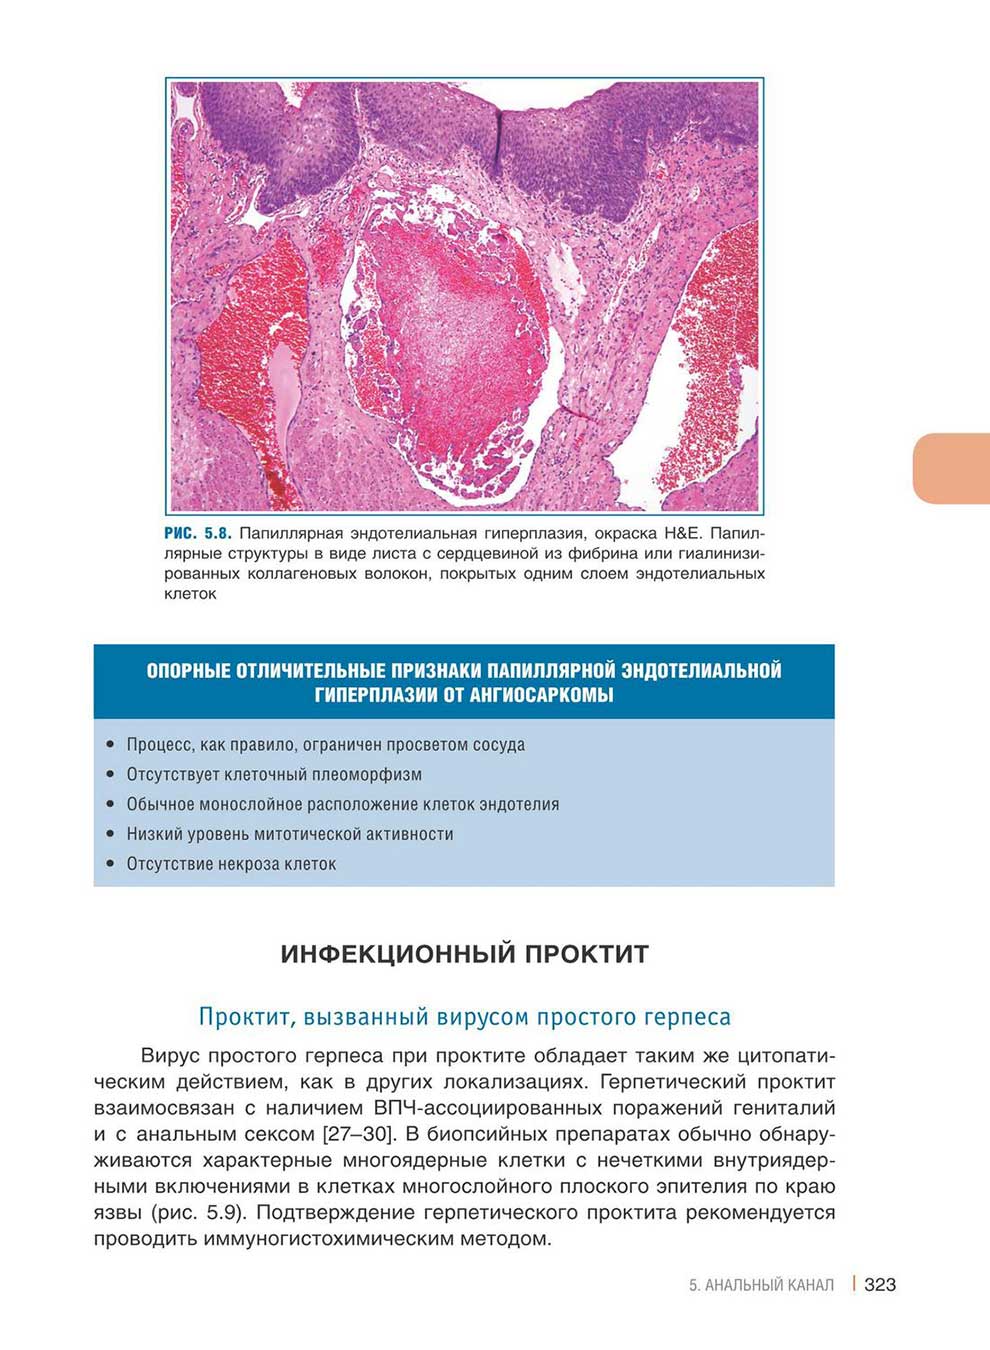 Папиллярная эндотелиальная гиперплазия